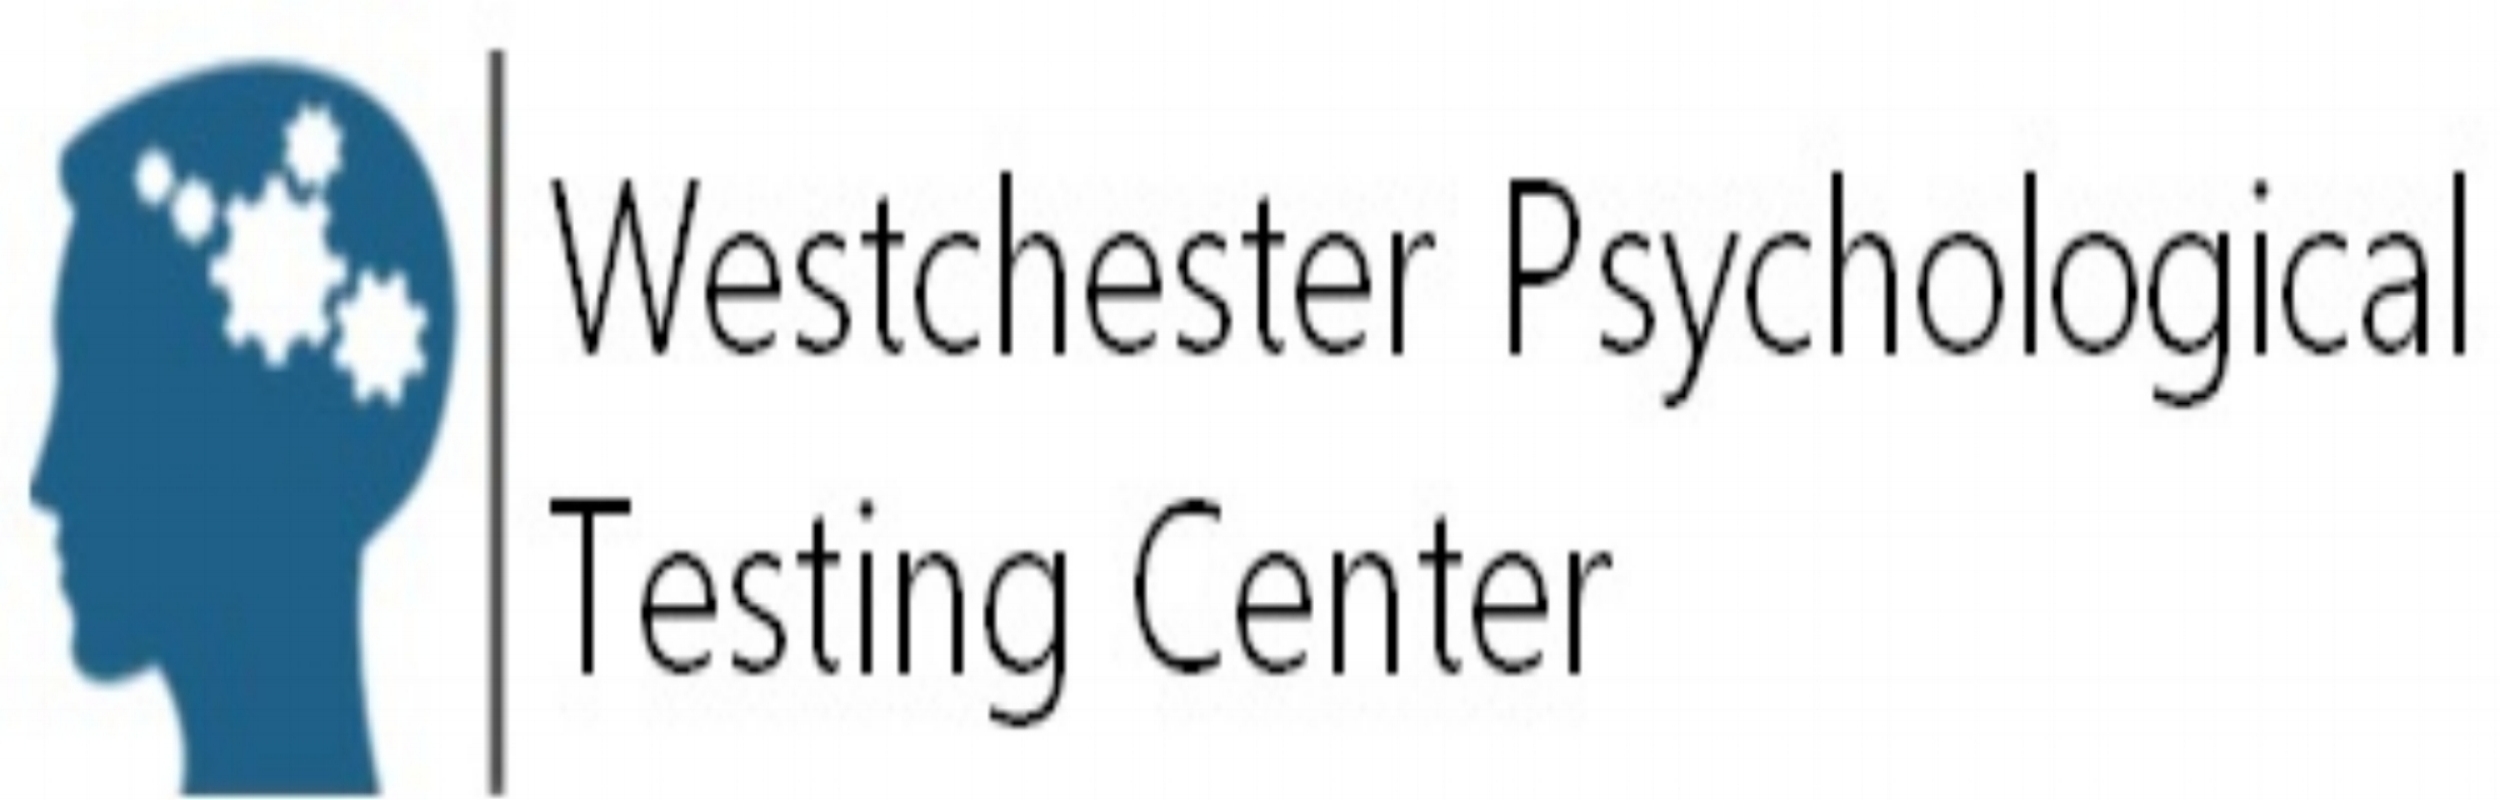 Westchester Psychological Testing Center